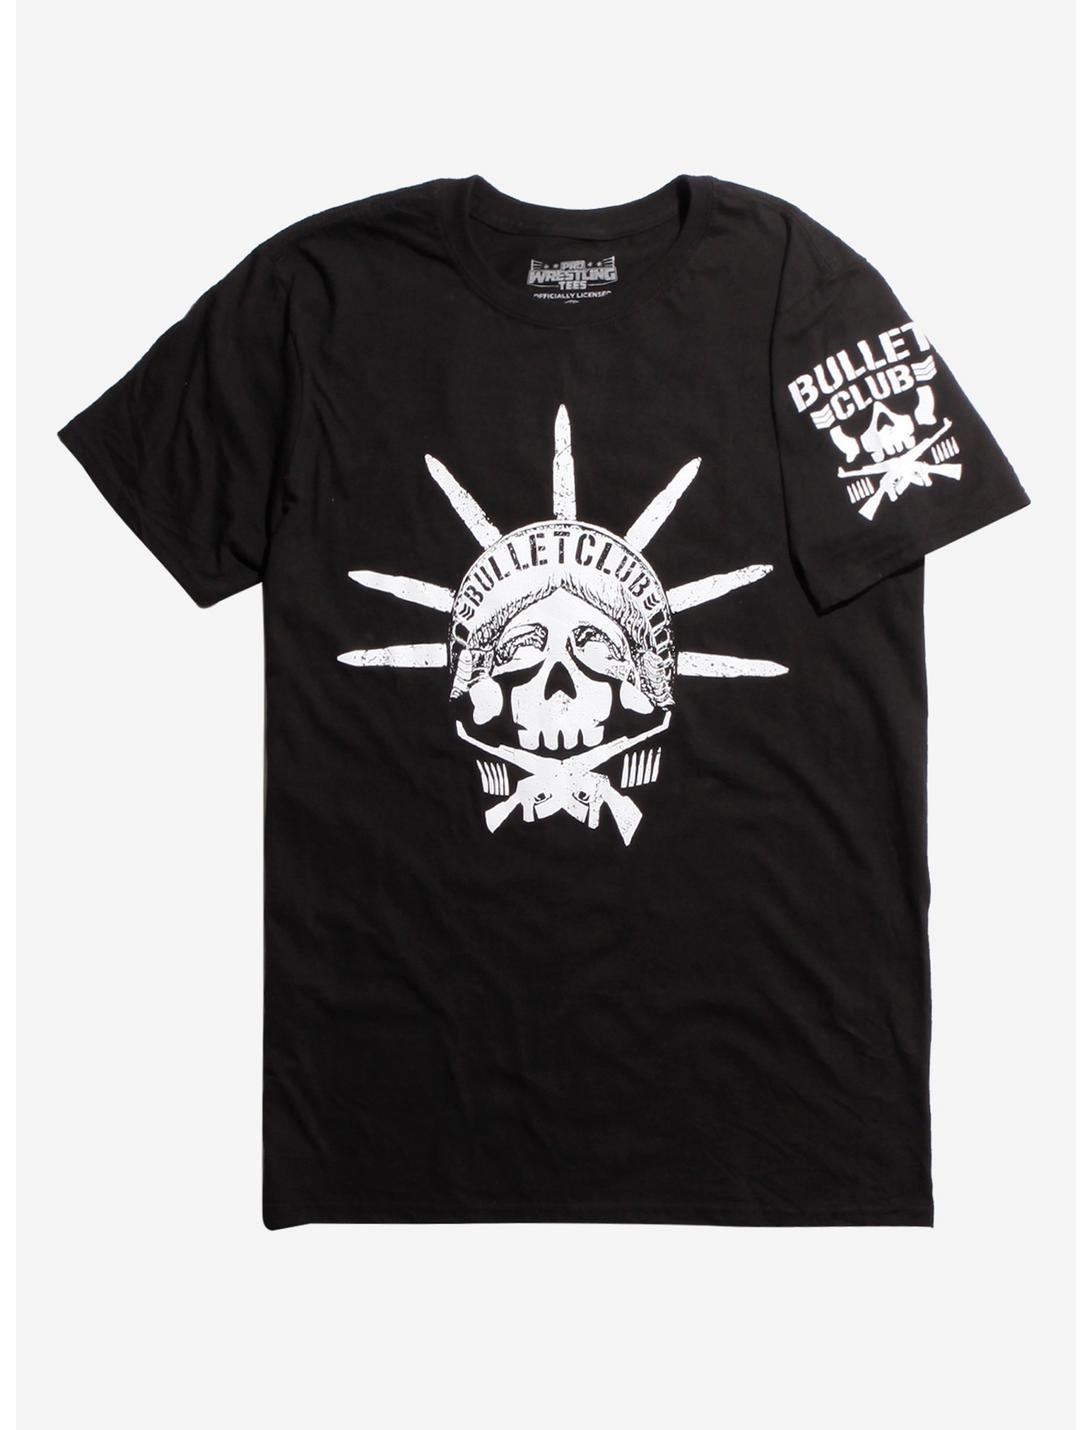 New Japan Pro-Wrestling Bullet Club Statue Of Liberty T-Shirt, BLACK, hi-res